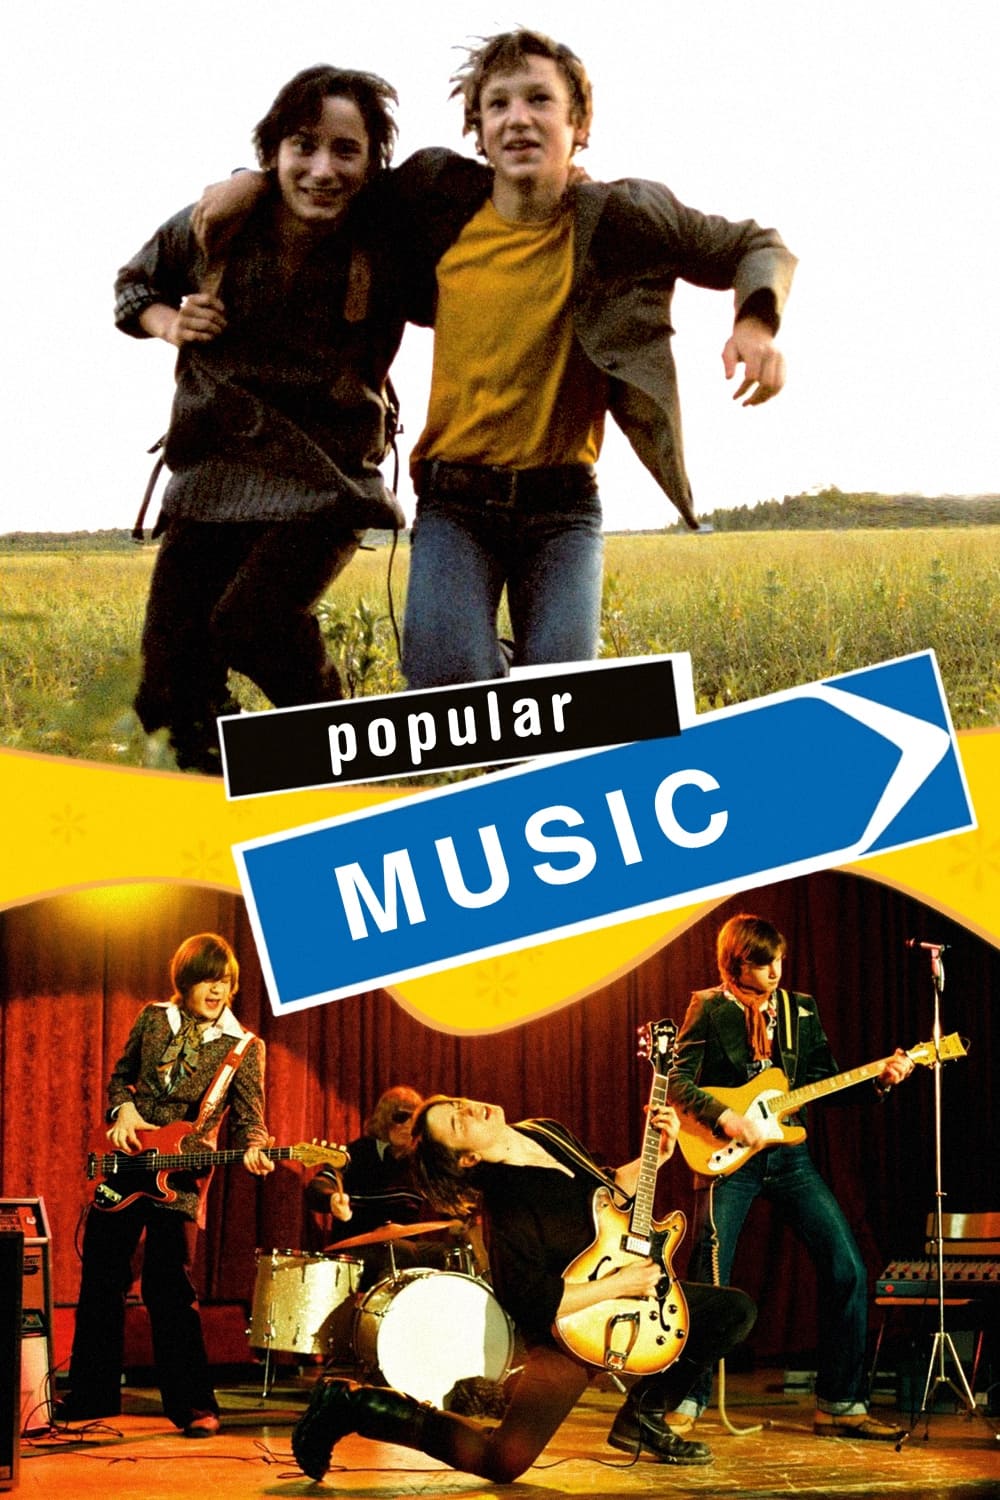 Populärmusik aus Vittula (2004)